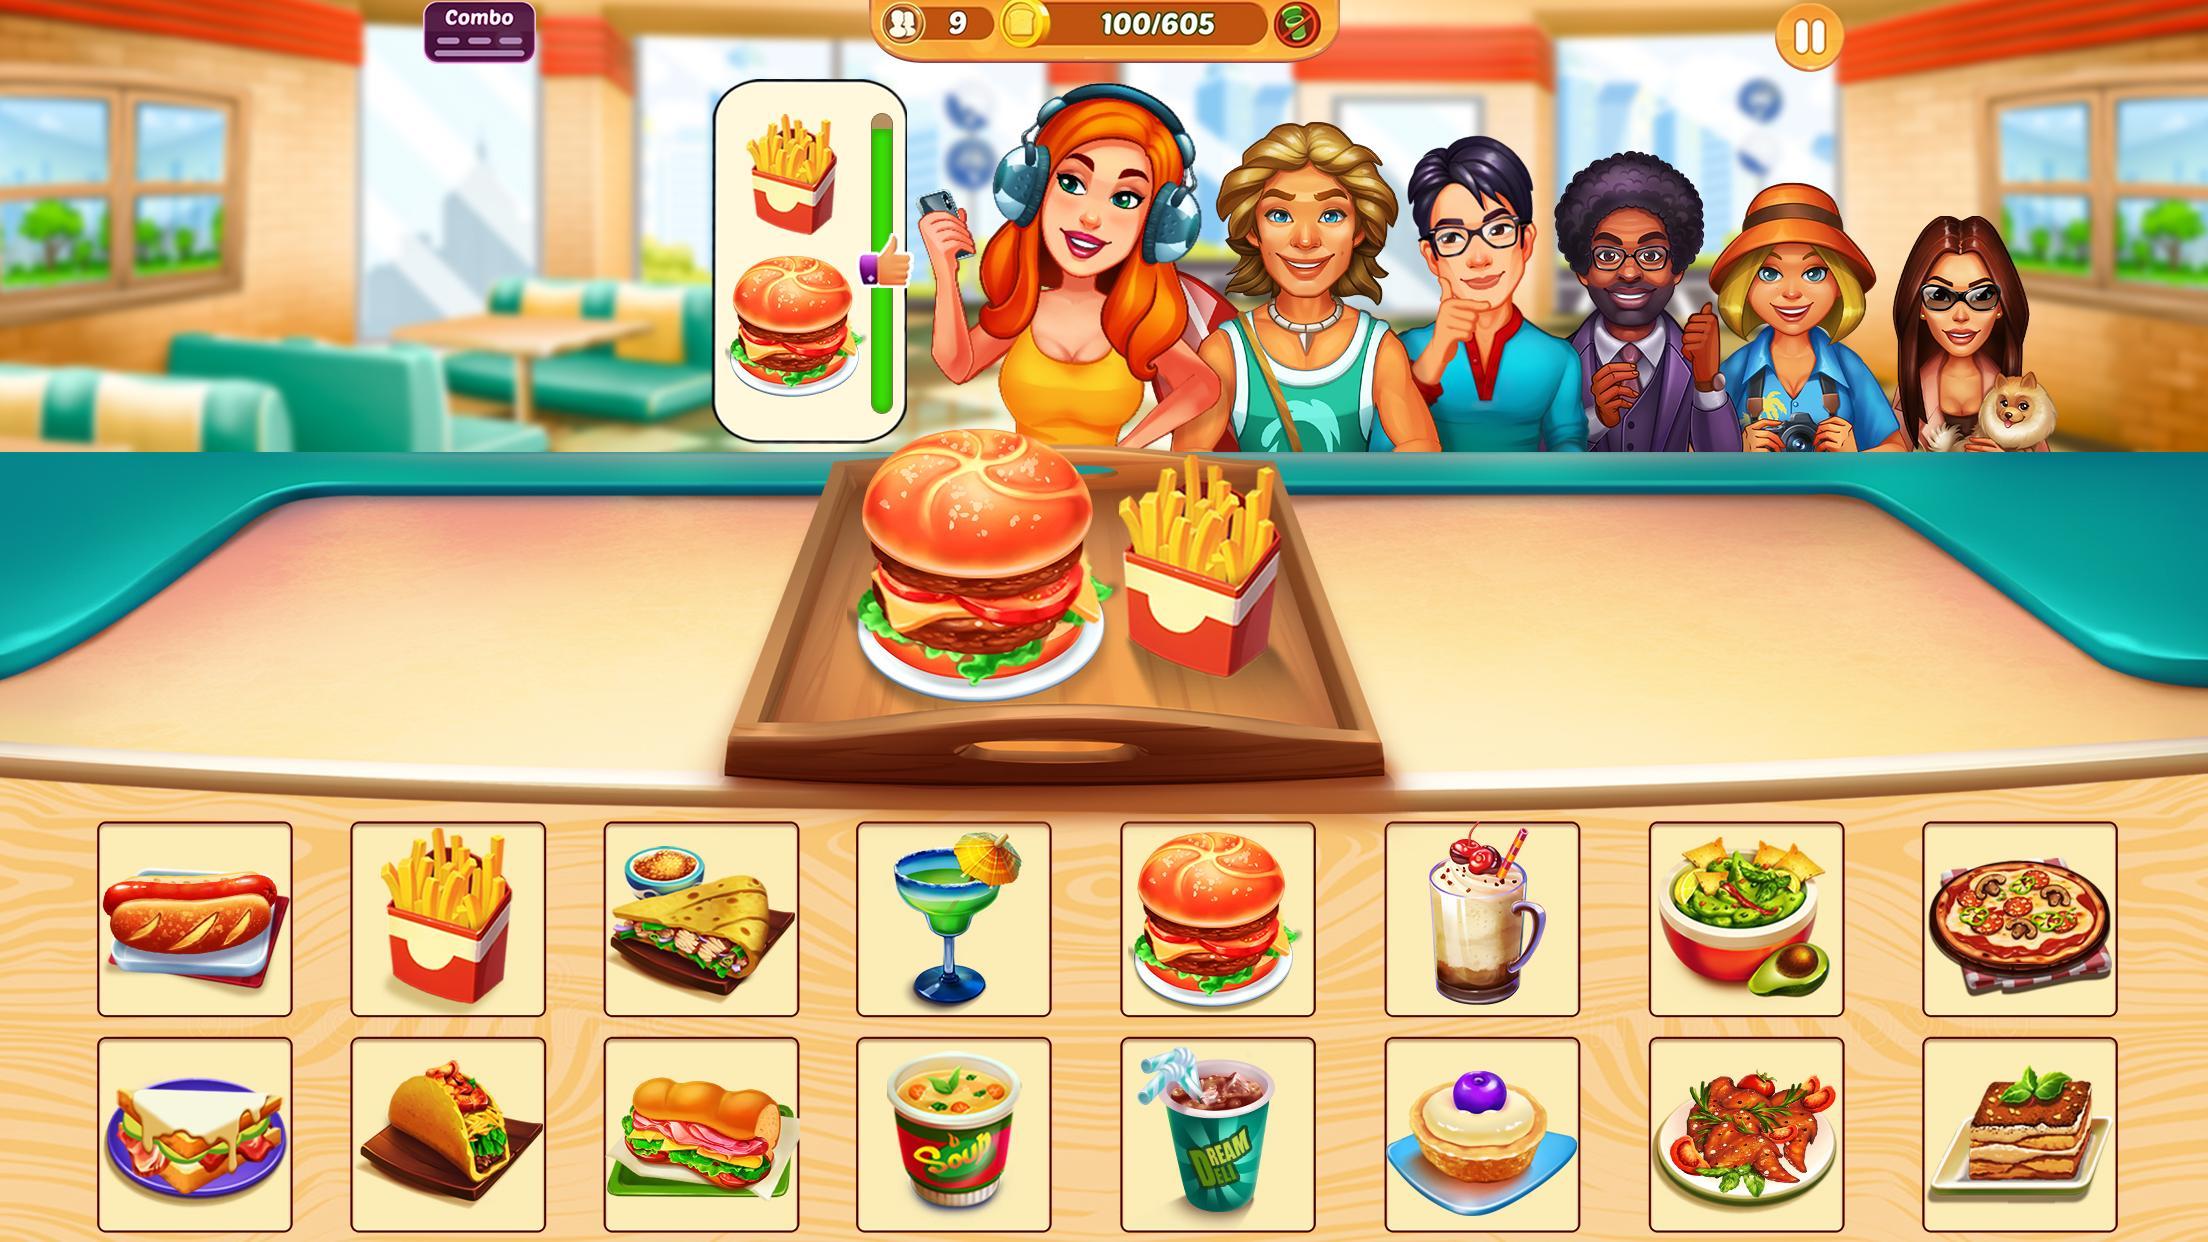 Screenshot 1 of Приготовь это - игры в ресторане 1.3.6